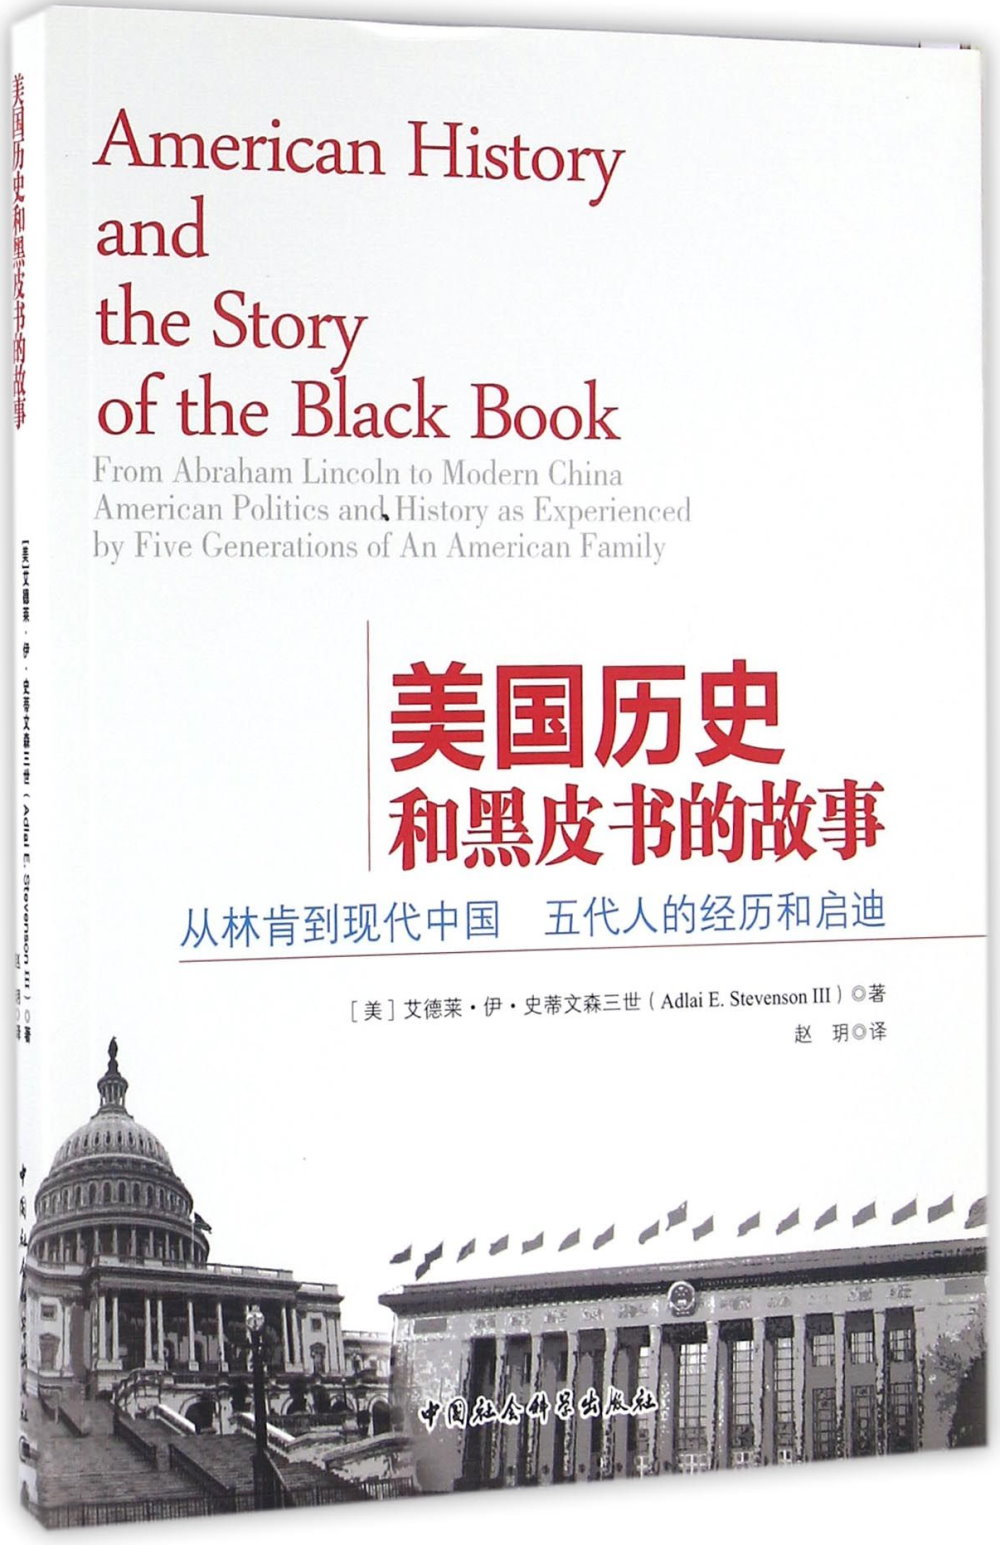 美國歷史和黑皮書的故事：從林肯到現代中國 五代人的經歷和啟迪